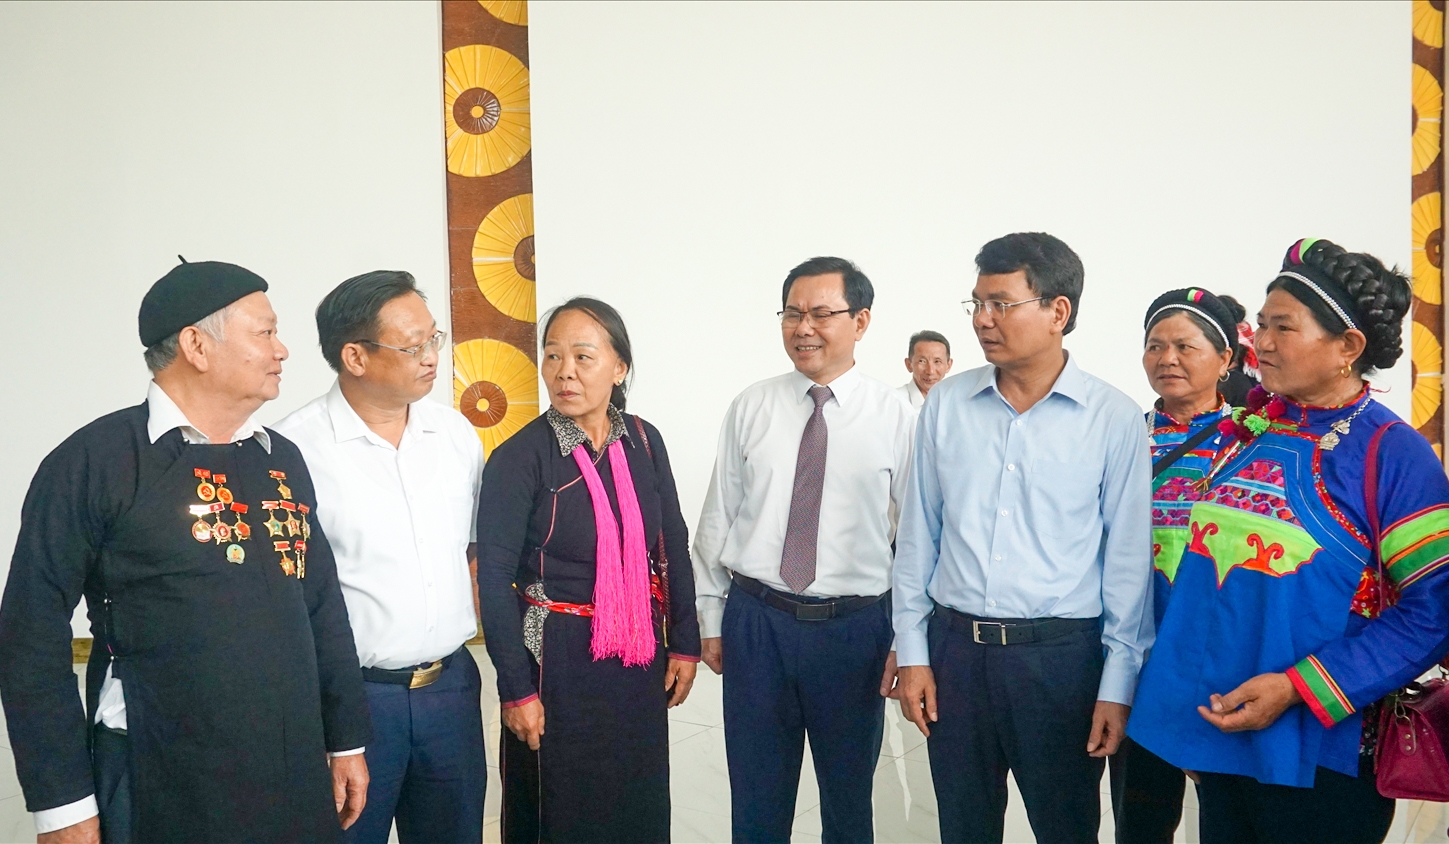 Đại hội đại biểu DTTS nhằm ghi nhận công lao đóng góp to lớn của đồng bào các DTTS với sự phát triển chung của tỉnh Lào Cai